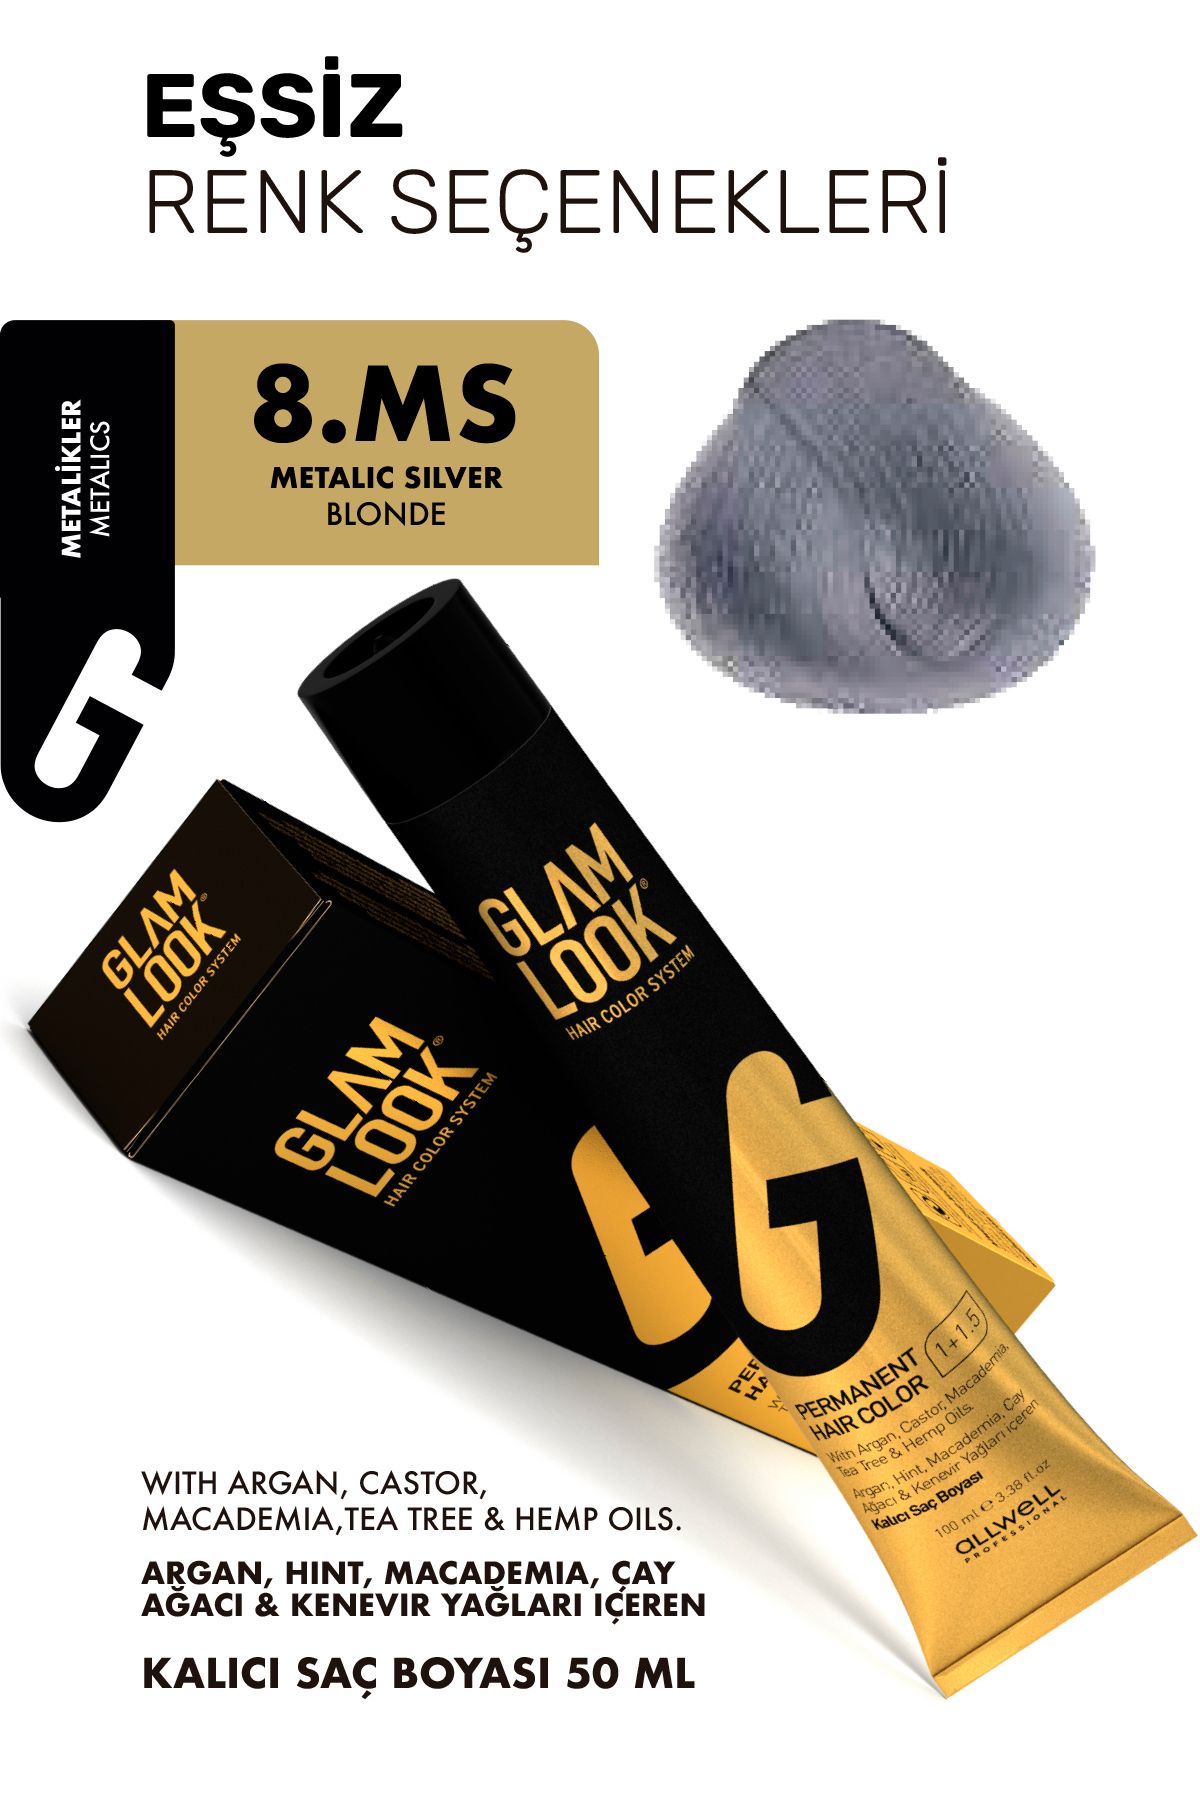 glam look 8.ms / Hair color 50 ml Metalic Silver Blonde Kalıcı Saç Boyası